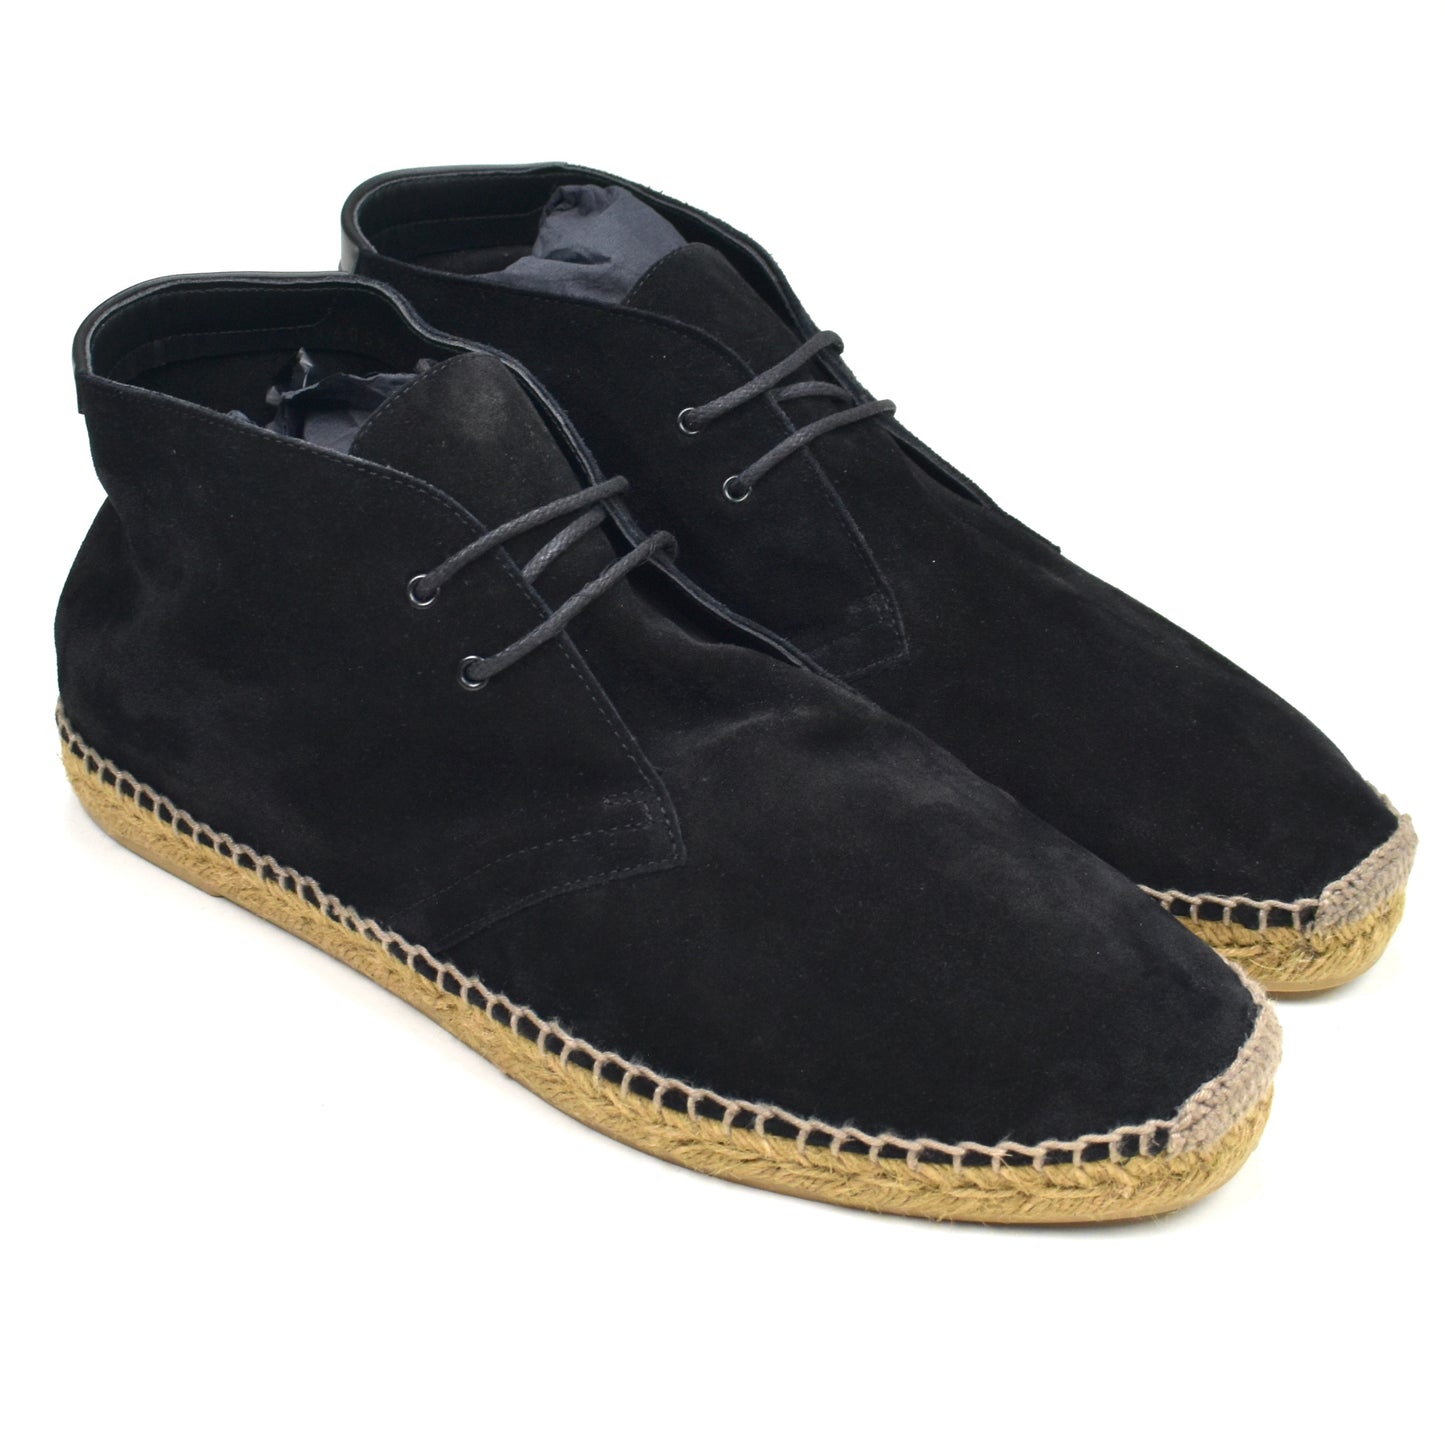 Saint Laurent - Black Suede Espadrille Chukka Shoes